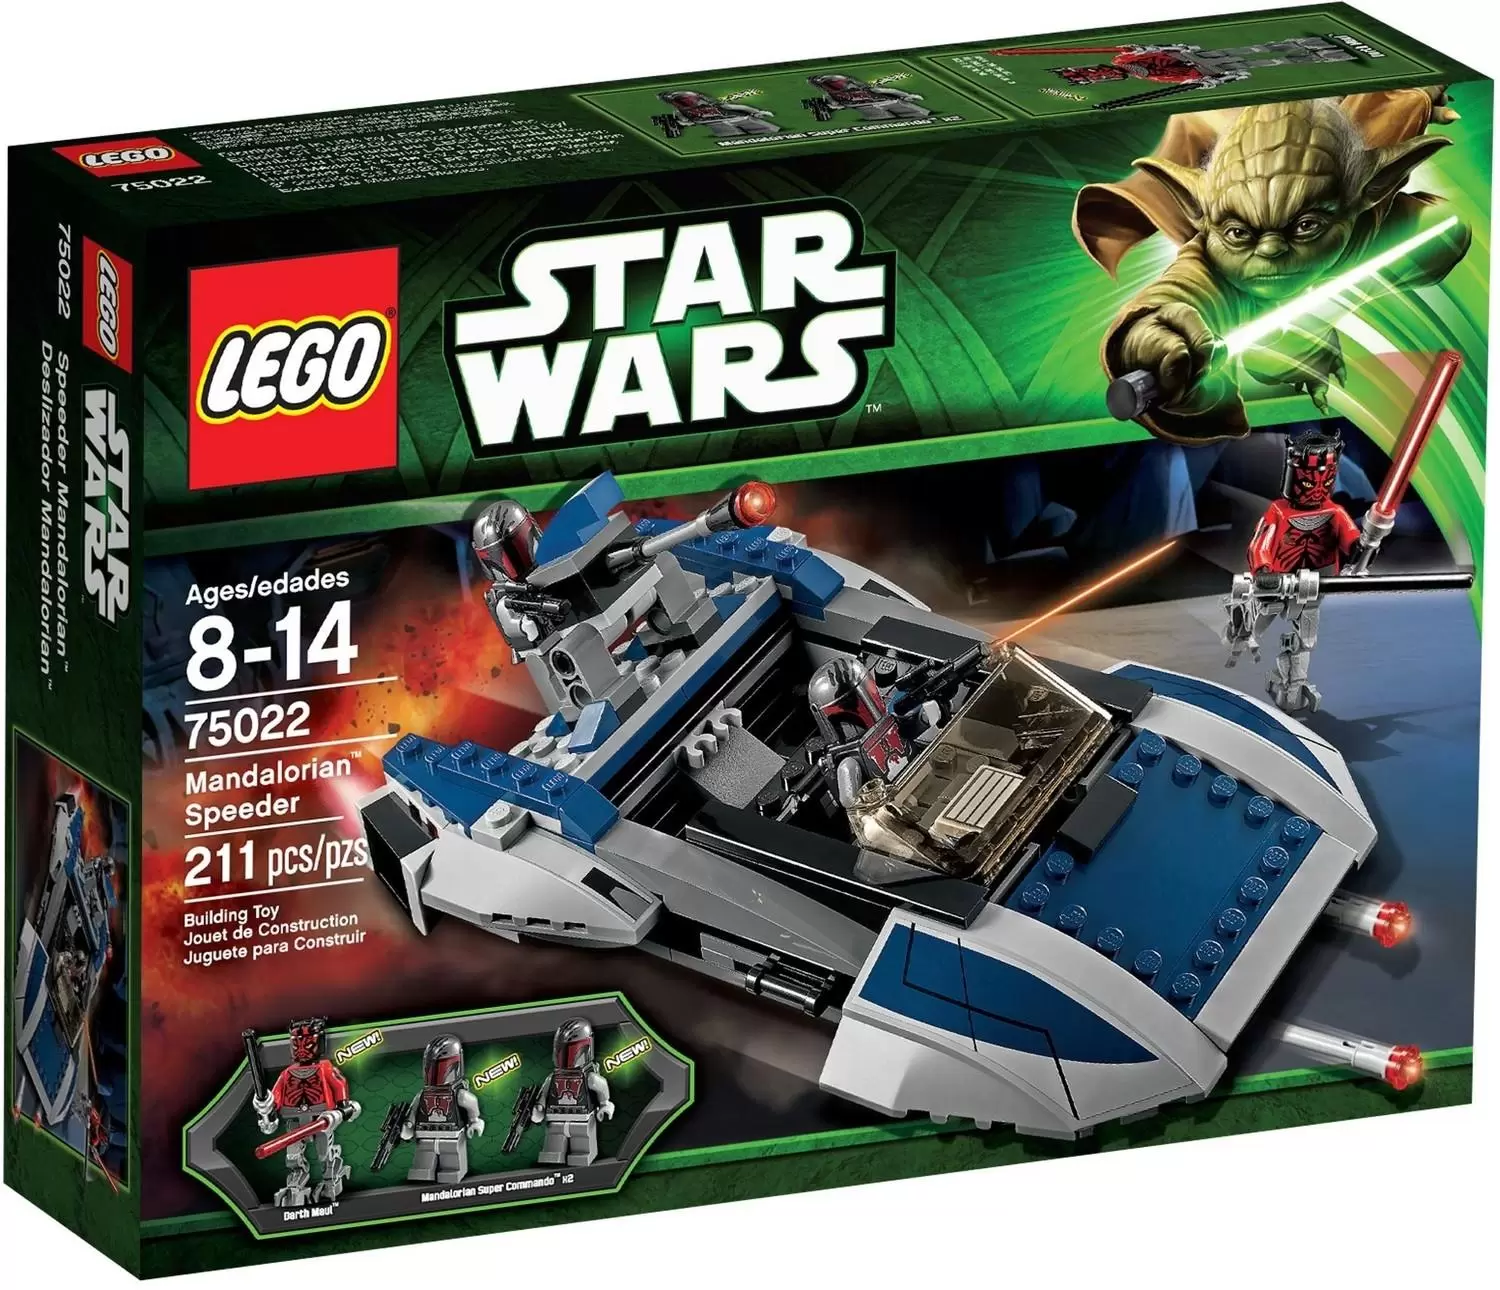 LEGO Star Wars - Mandalorian Speeder